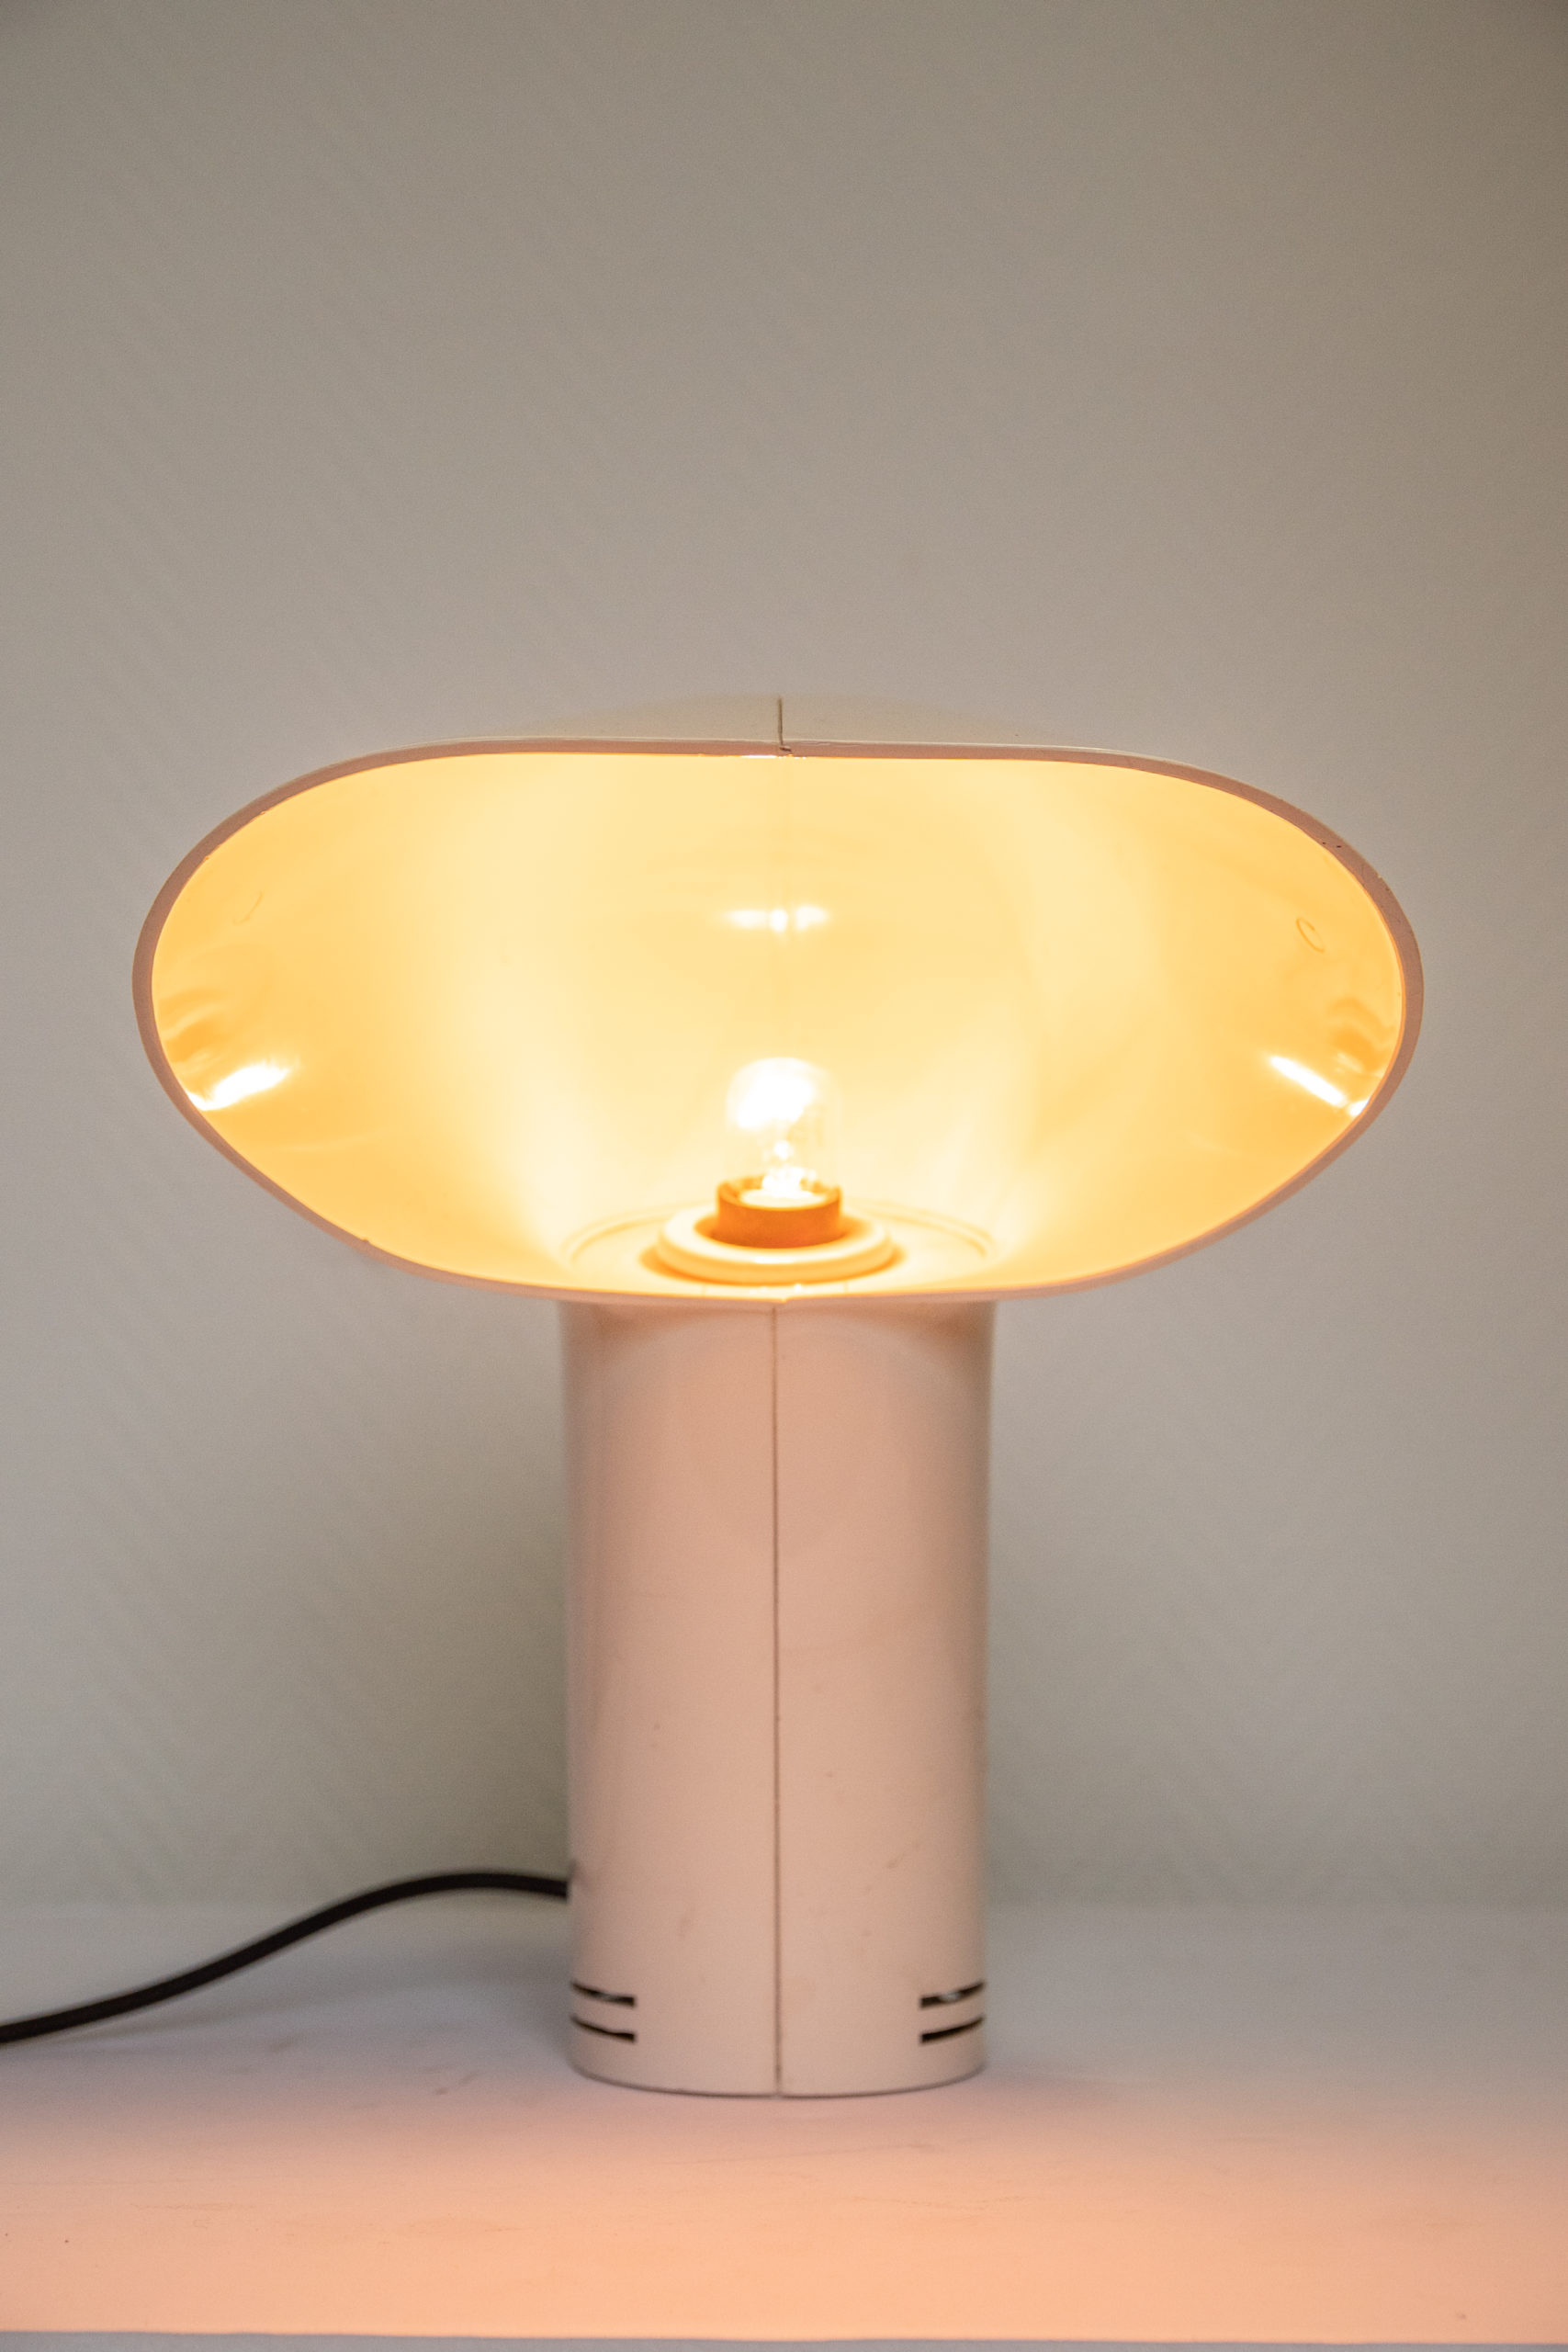 Lampe-sorella-harvey-guzzini-1960-vintage-lampe-décoration-aurore-morisse-antiquaire-loiège-paris-affaire-conclue1